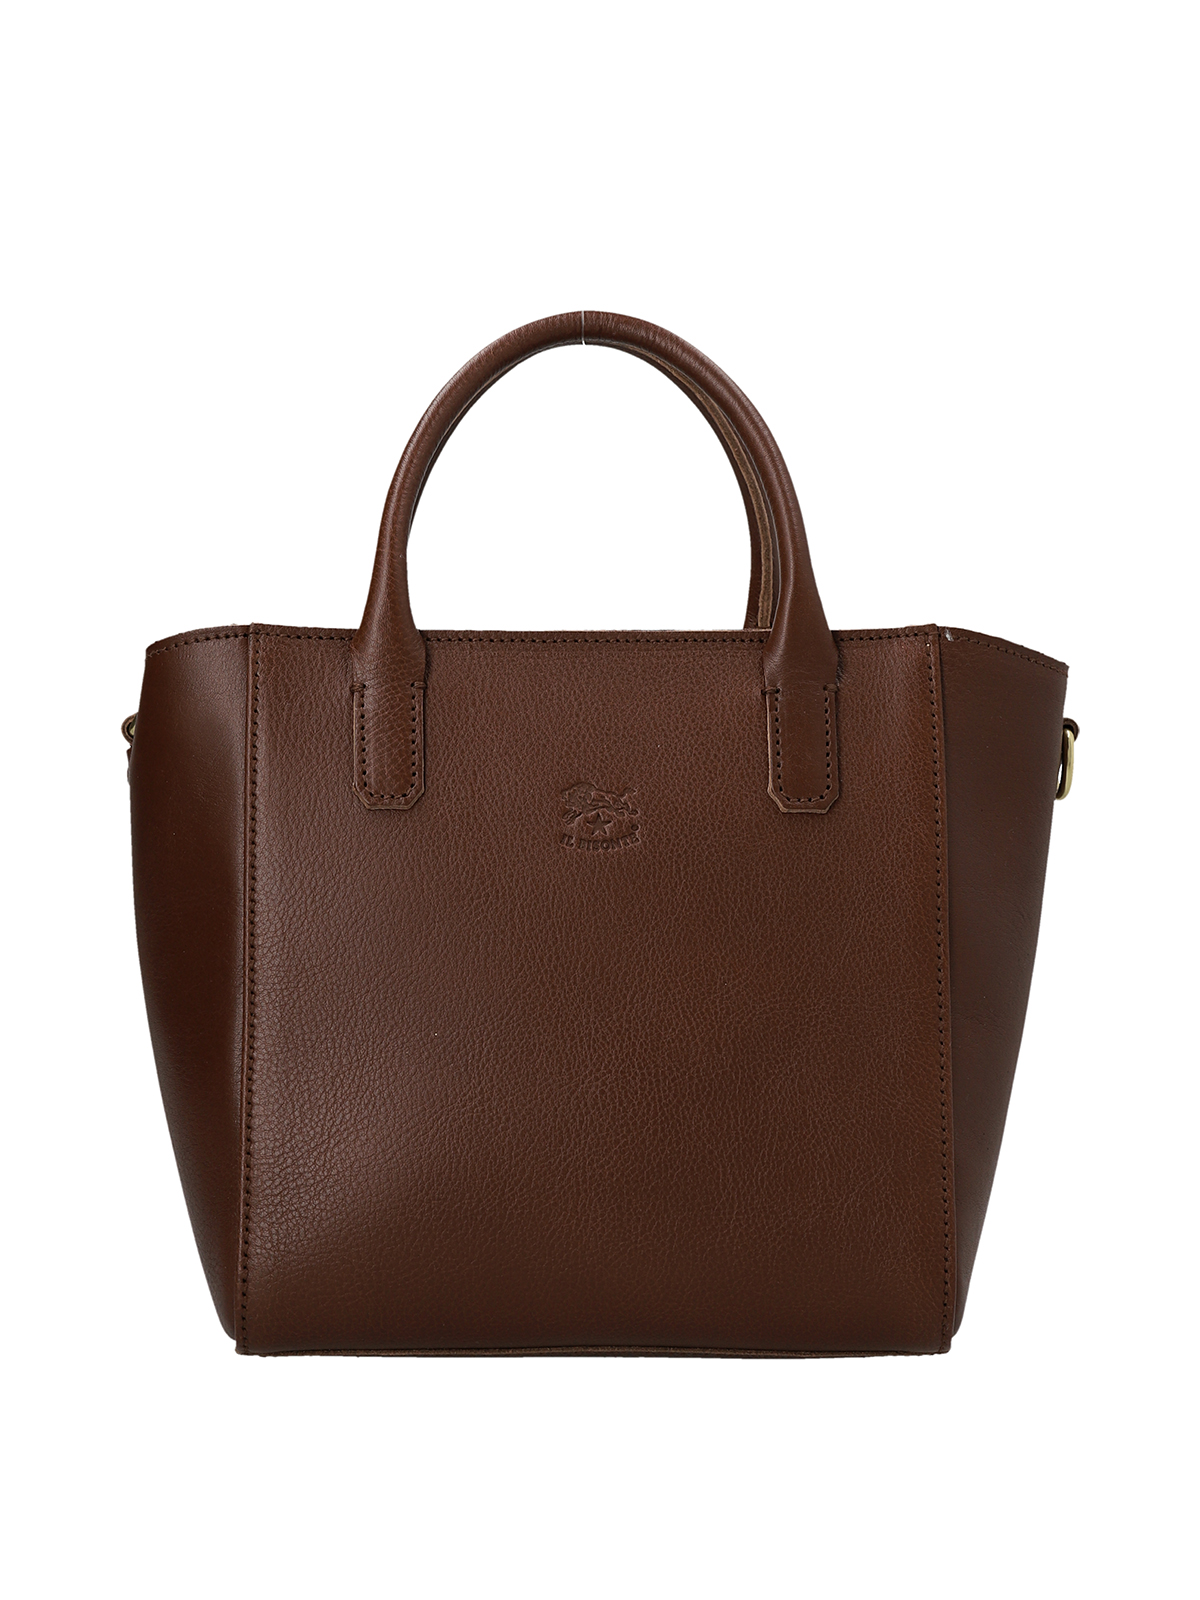 Totes bags Il Bisonte - greca handbag - BHA026PV0001BW464